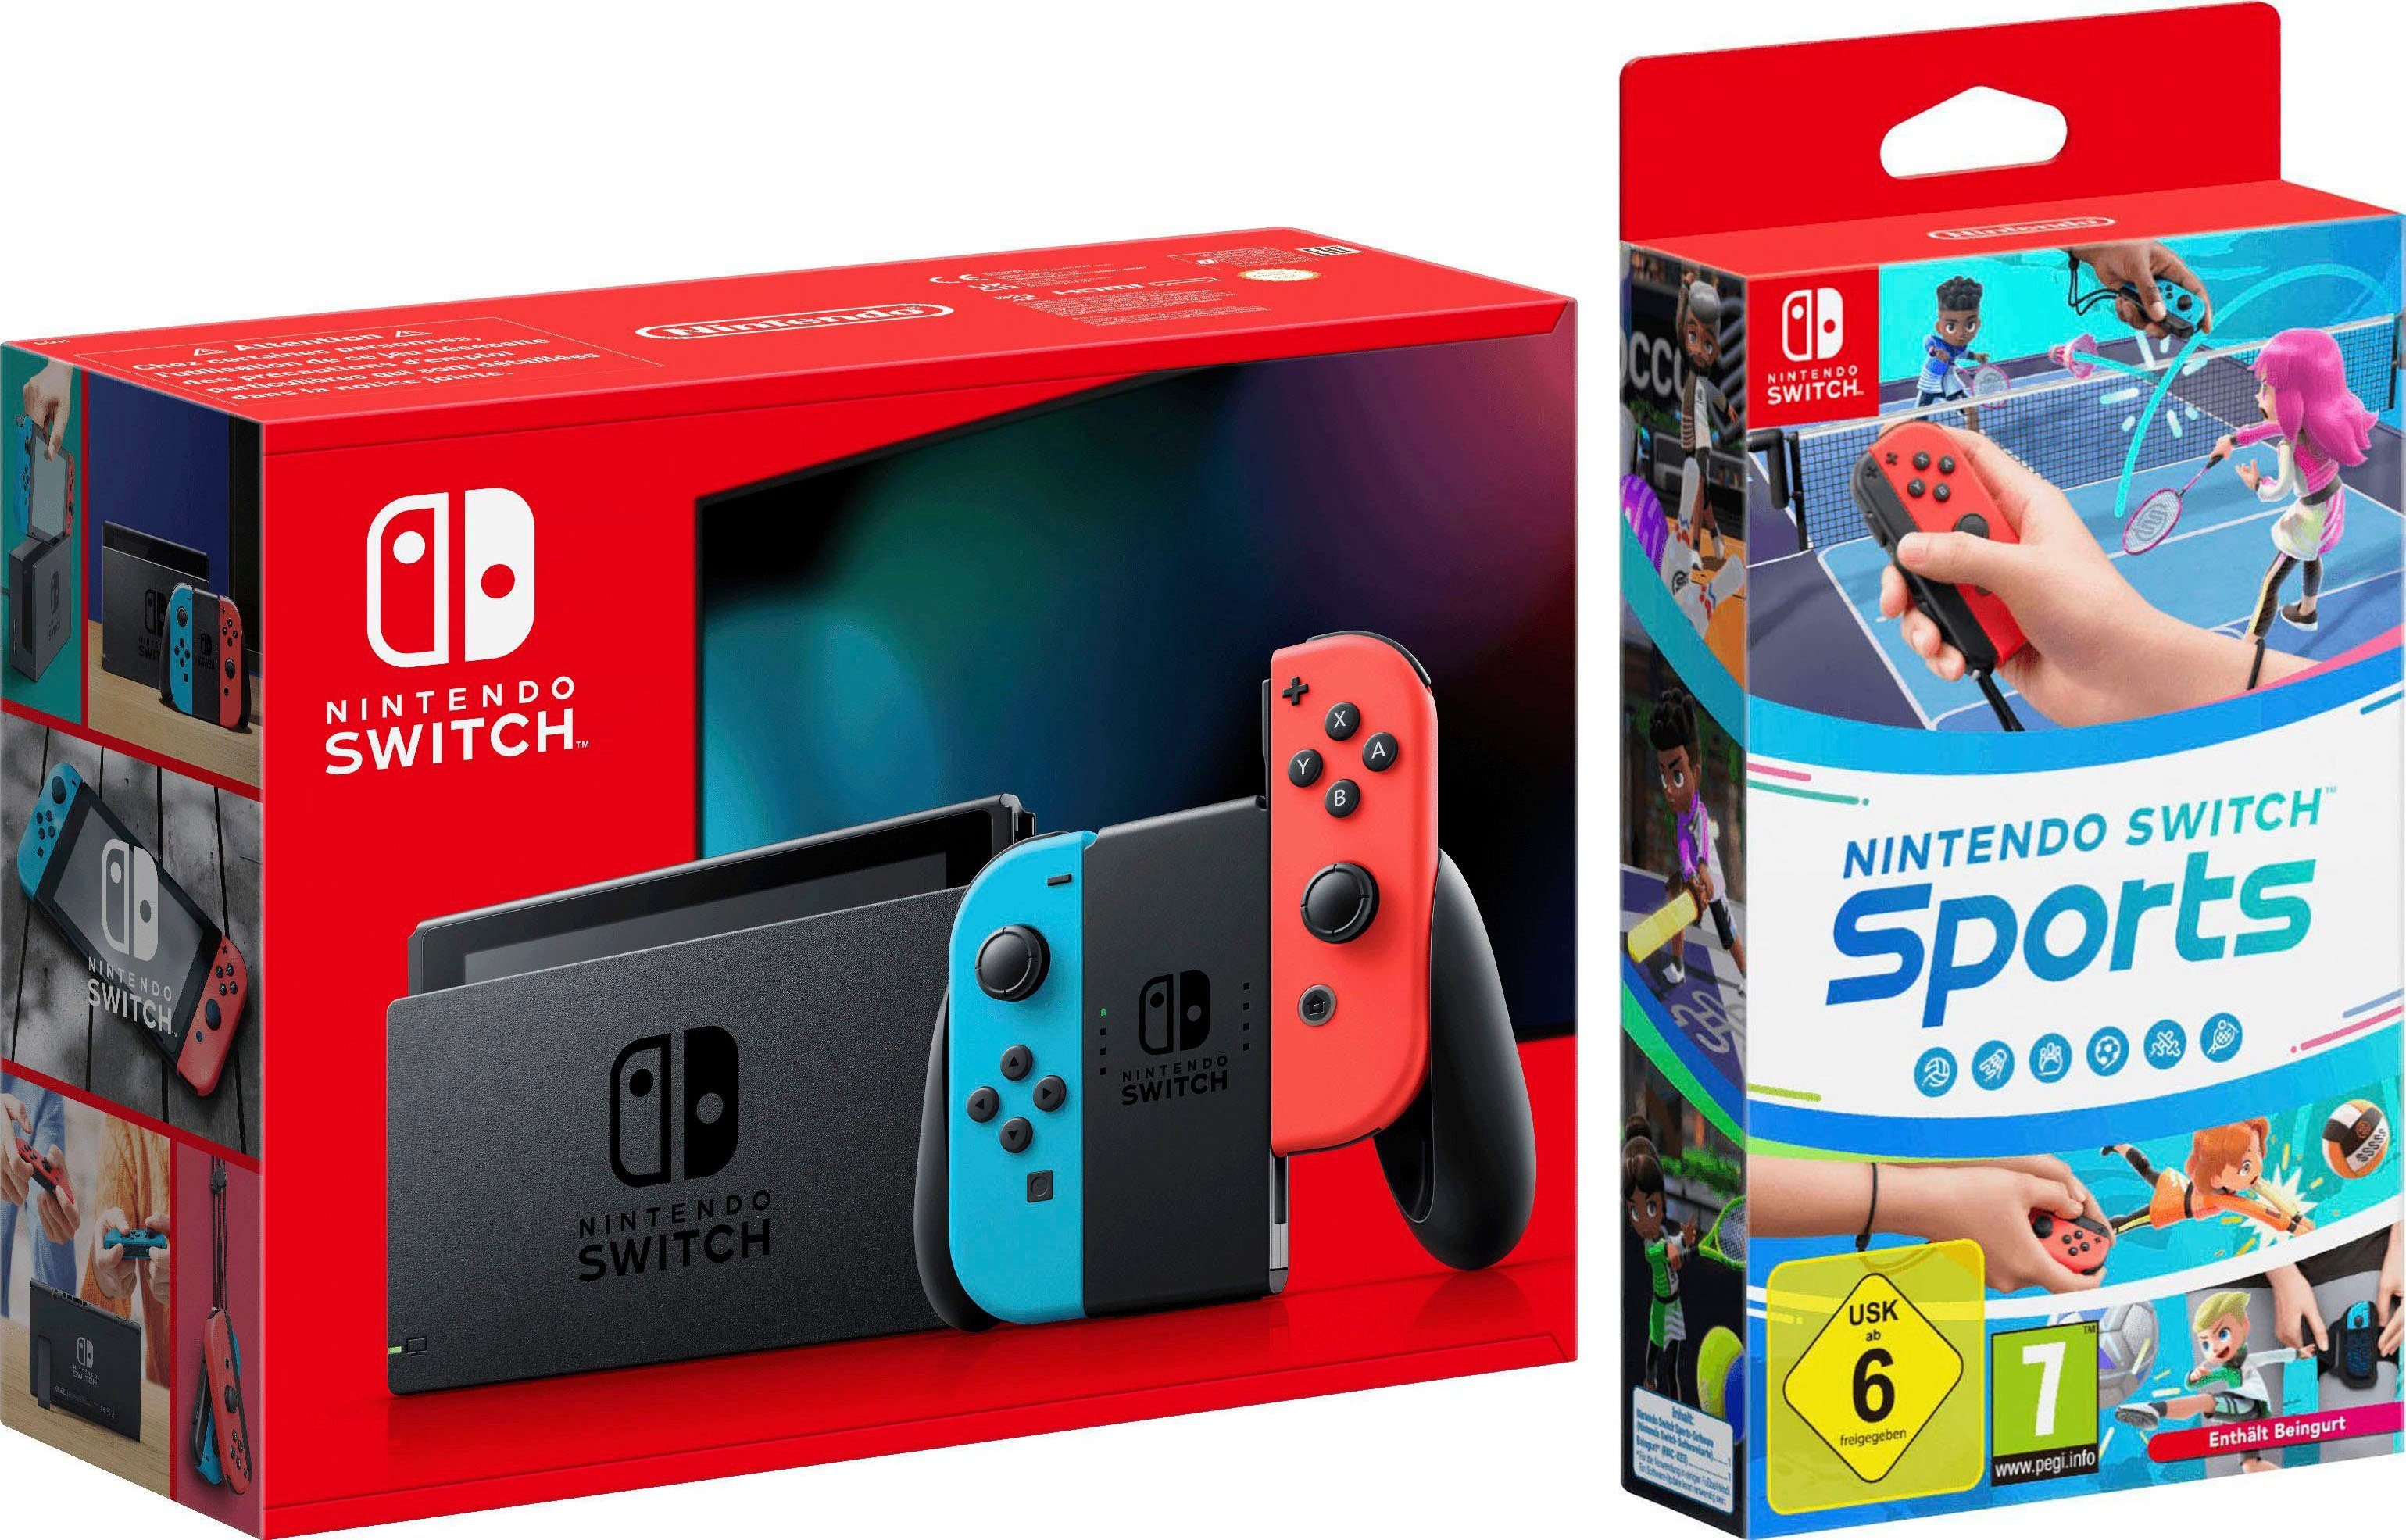 Nintendo Switch, inkl. Switch Sports, Neue Joy-Con Controller für  realistischen, interaktiven Spielspaß